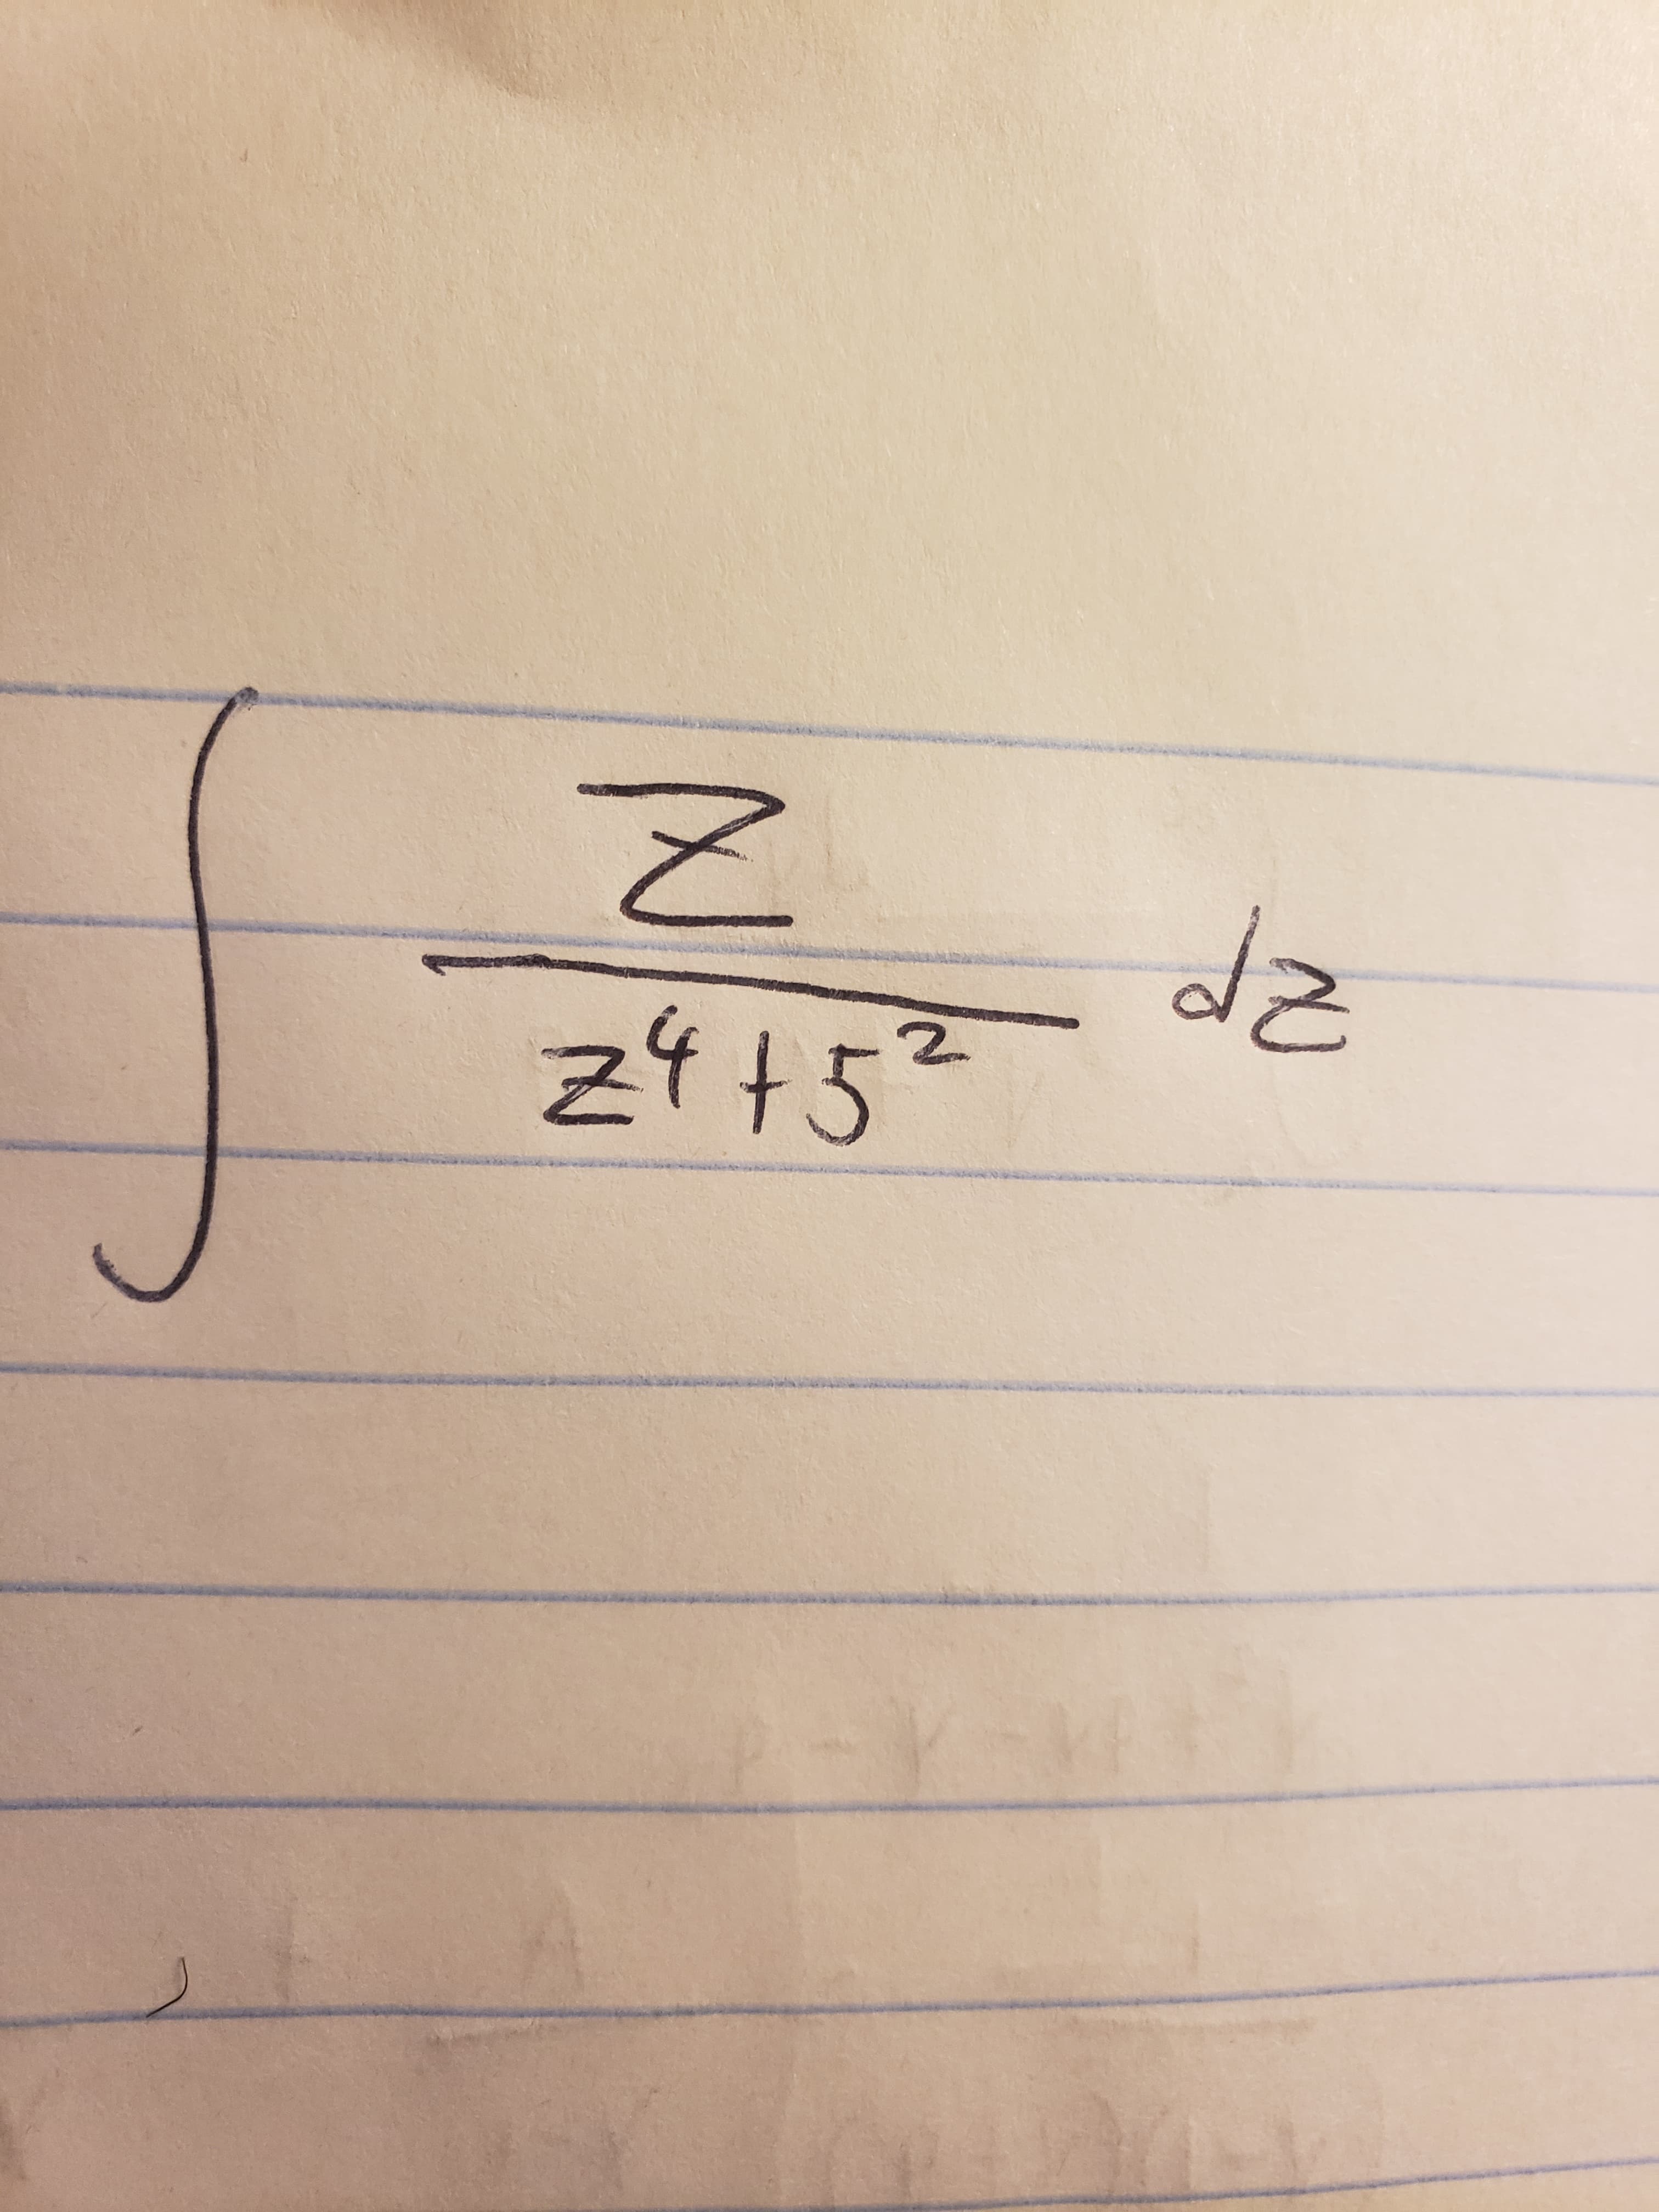 2.
z4+5²
